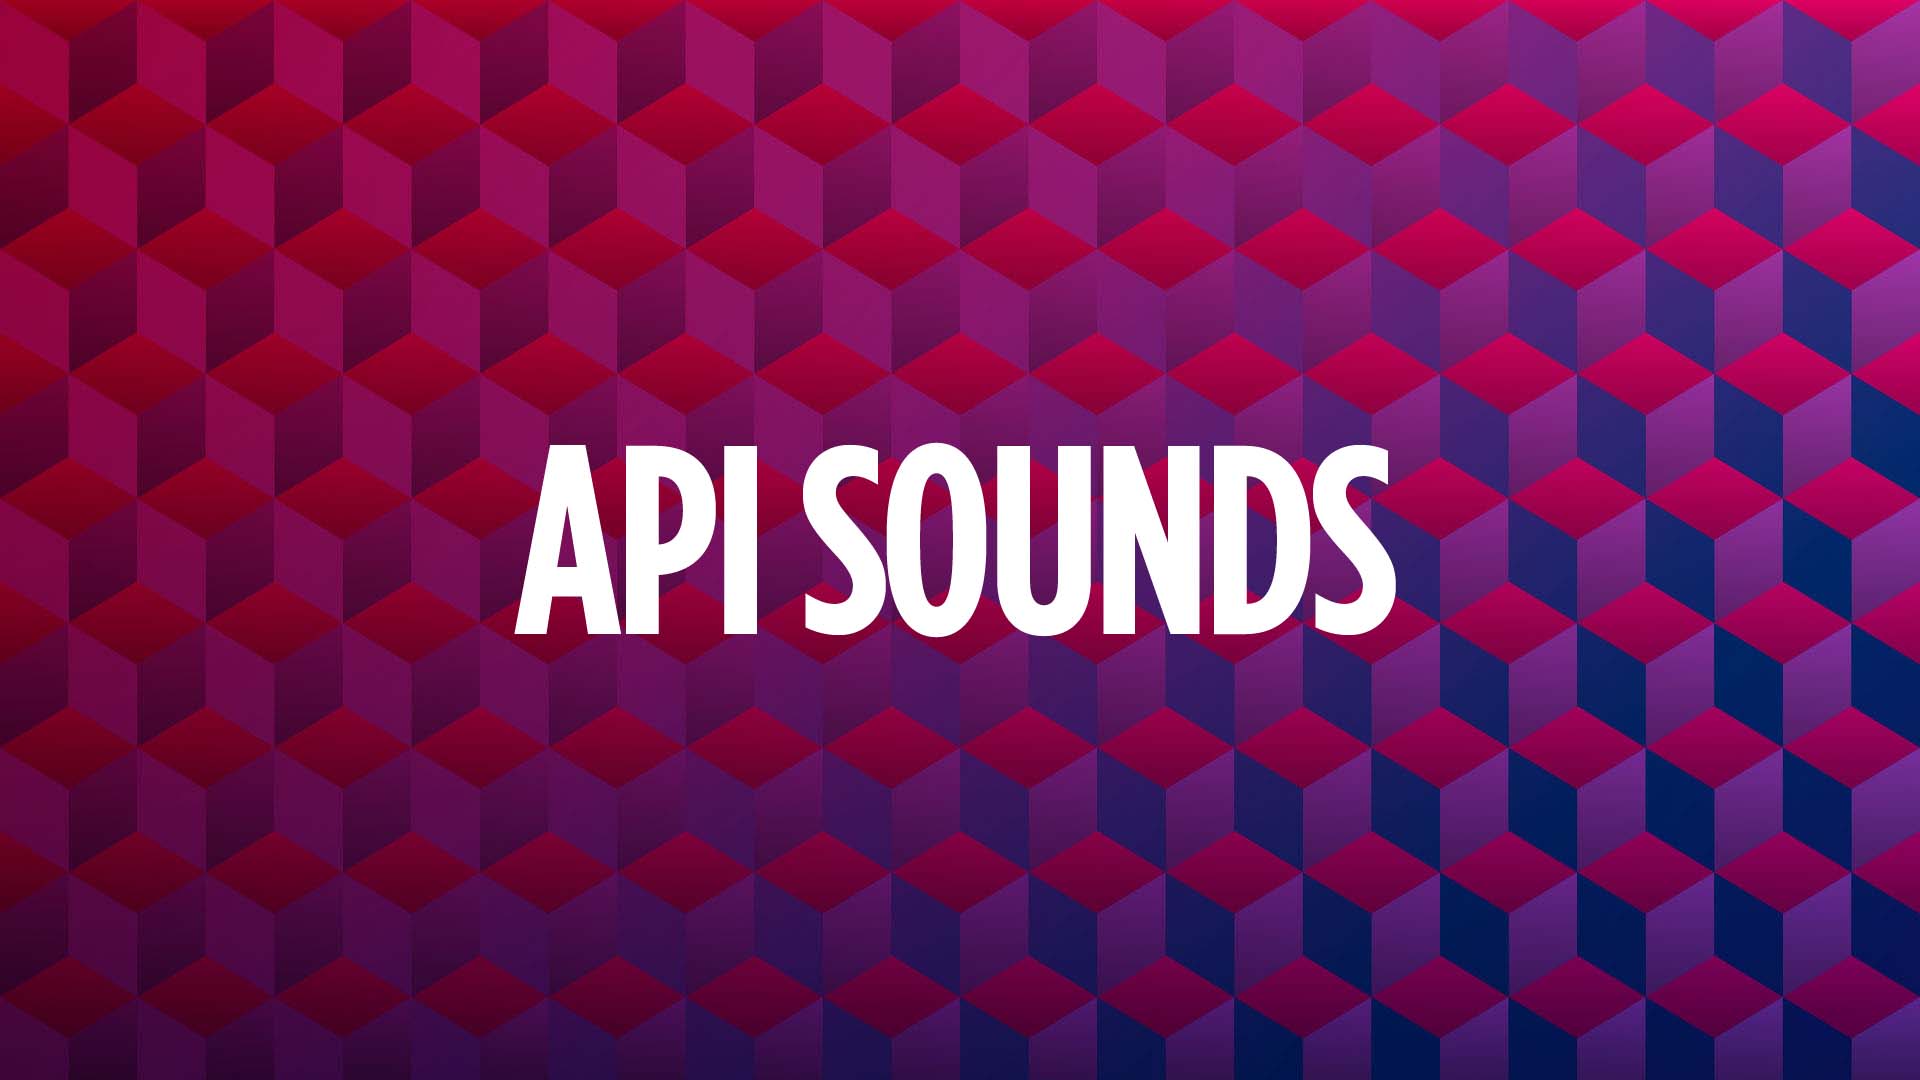 API Sounds Playlist on SiriusXM